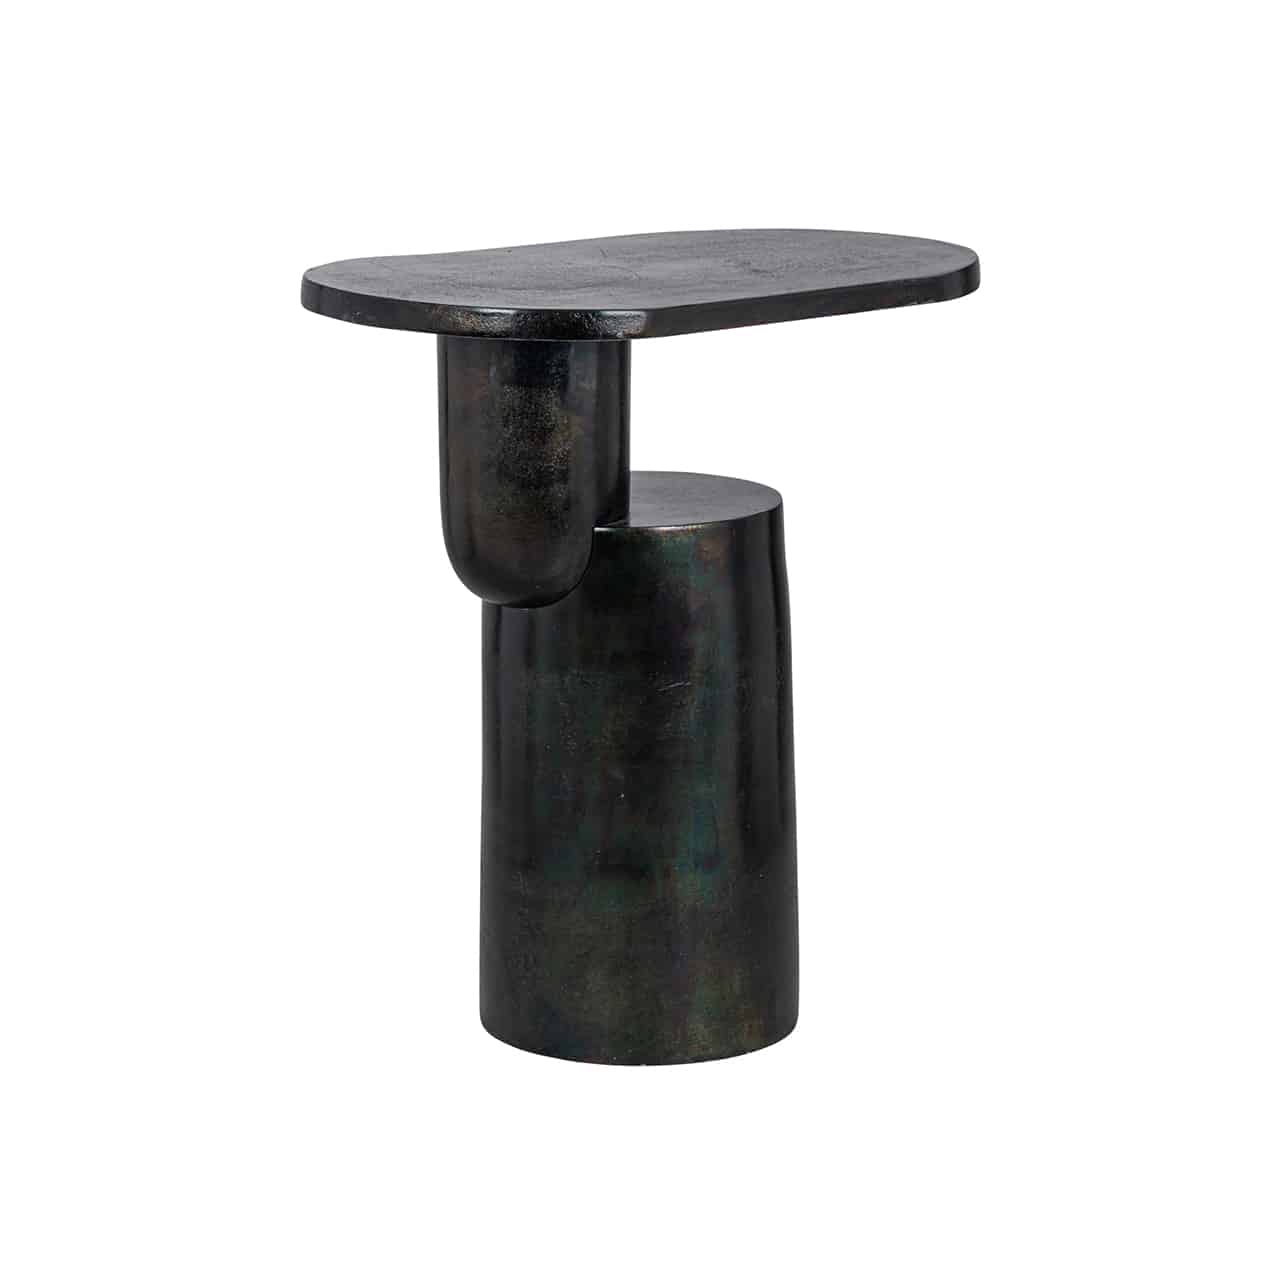 Moderner  Beistelltisch aus schwarzem, metallisch schimmerndem  Aluminium; auf einem runden Sockel seitlich aufsitzend  ein weiterer kleiner Sockel, darauf eine ovale Tischplatte.